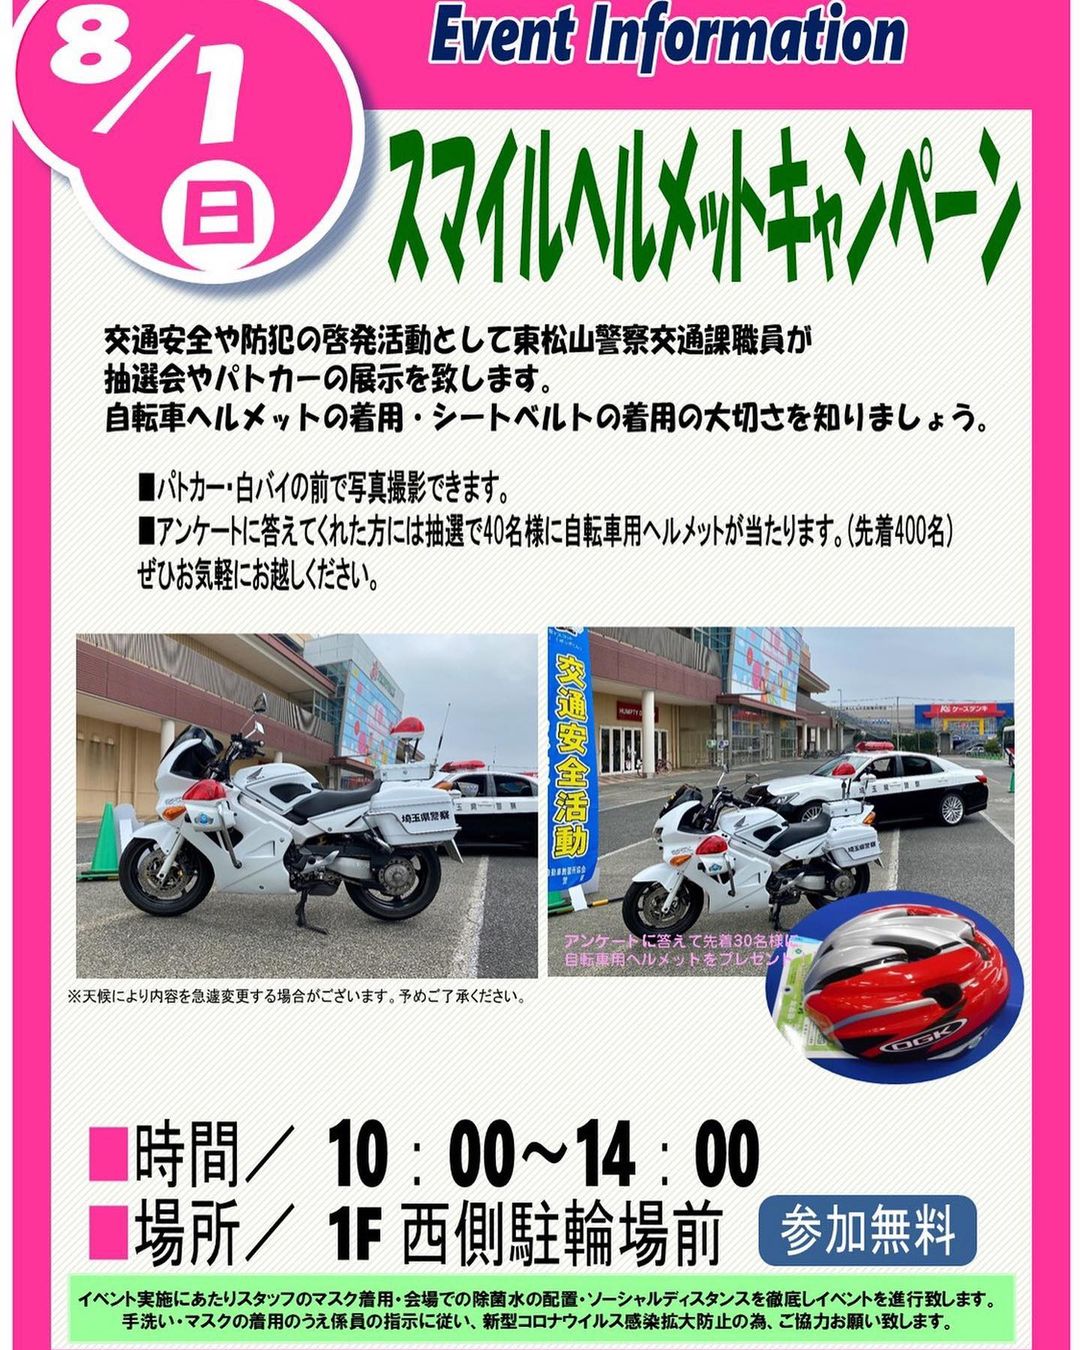 スマイルヘルメットキャンペーン in ピオニウォーク東松山2021ポスター